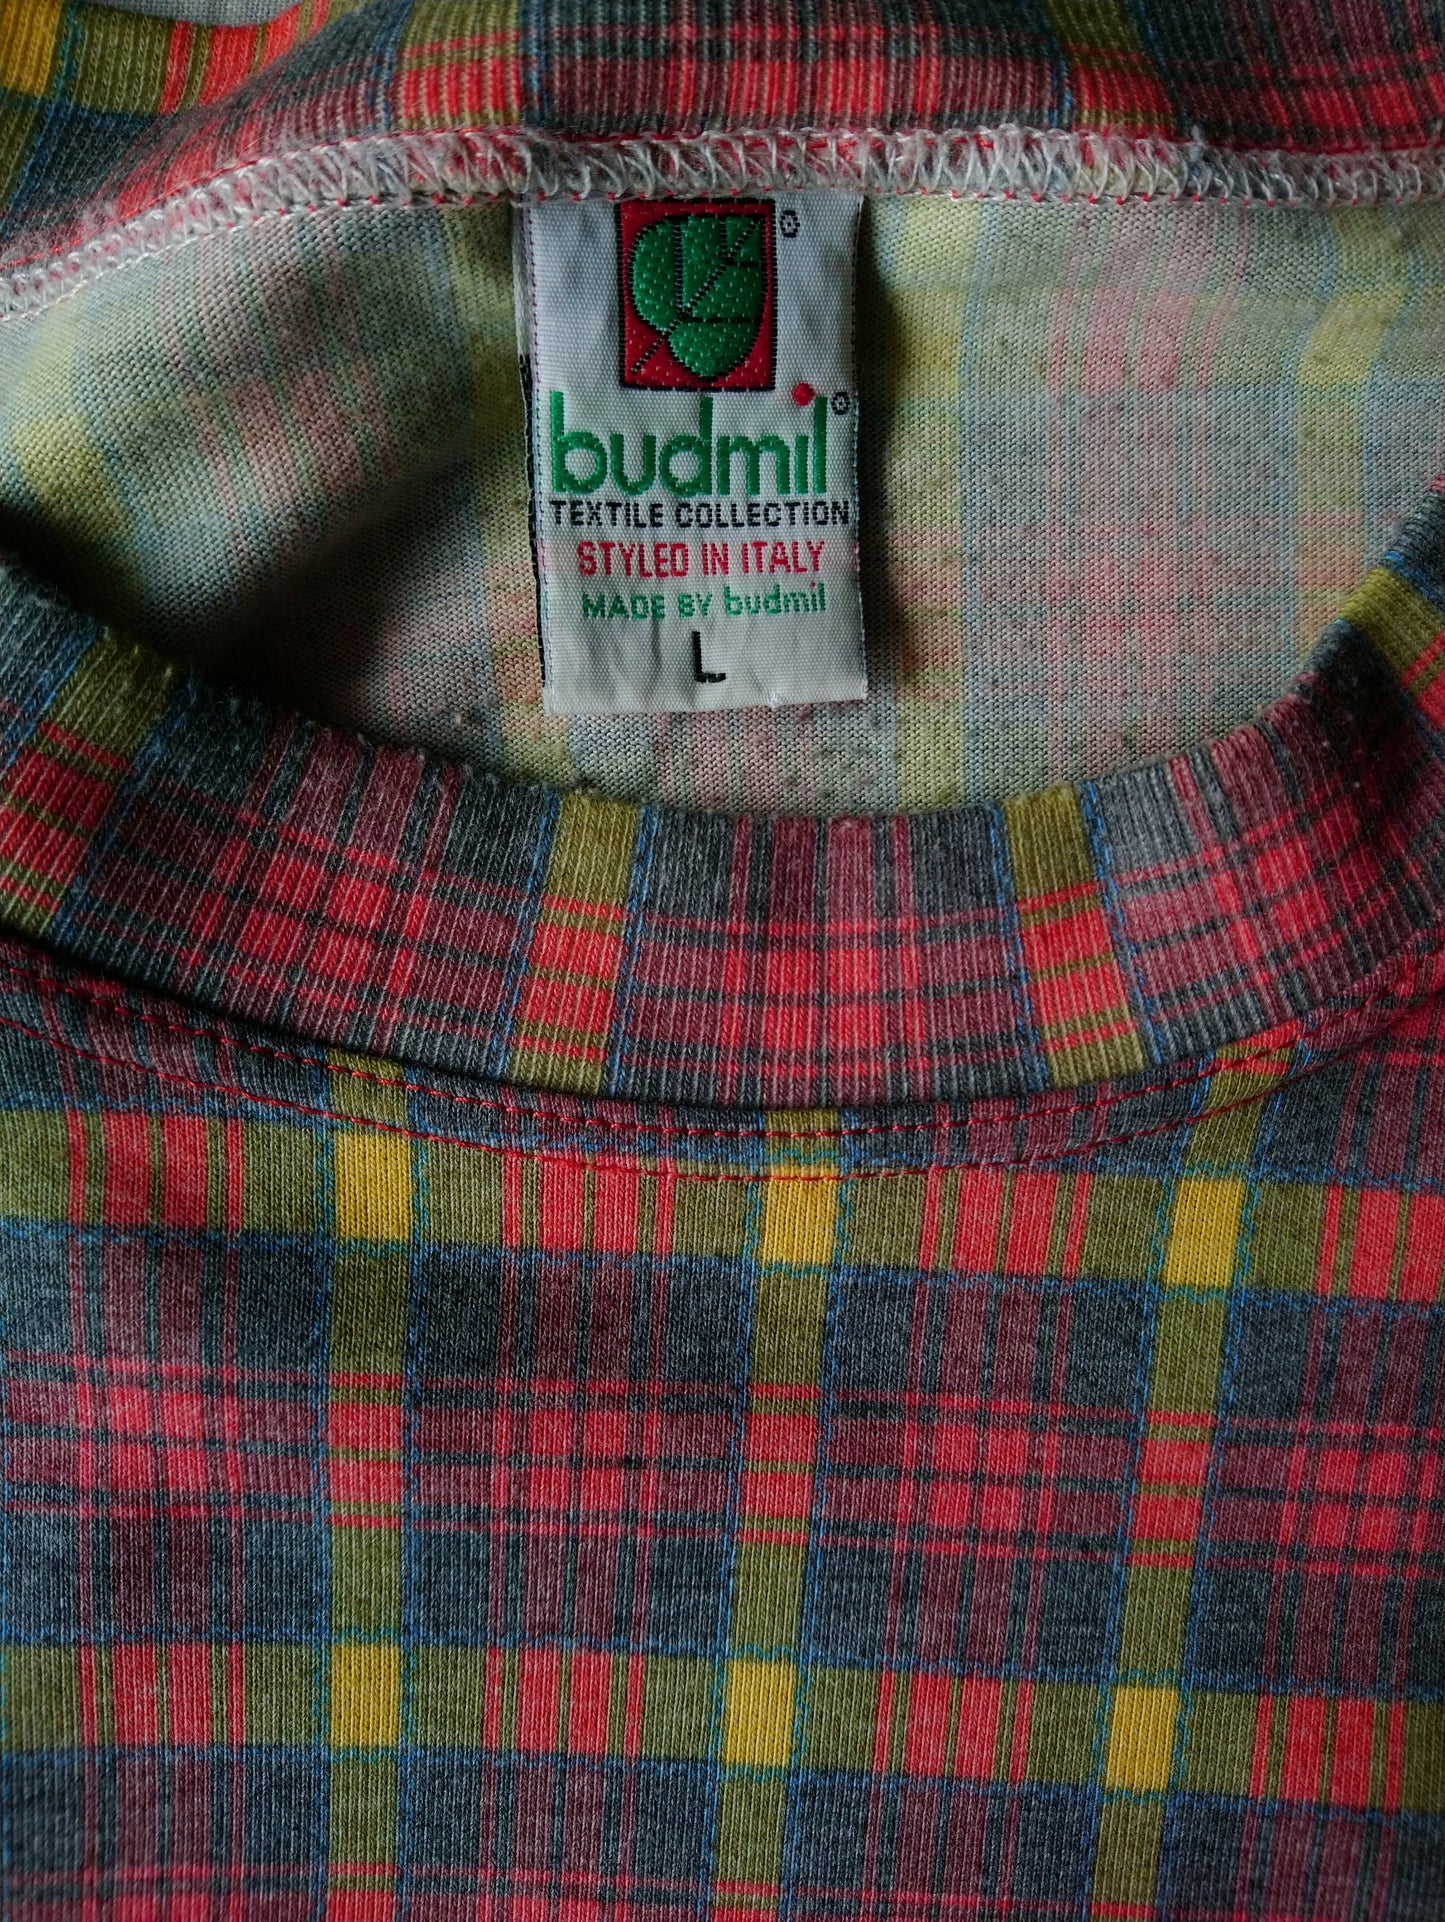 Camisa de Budmil vintage. Amarillo verde rojo a cuadros. Talla L.